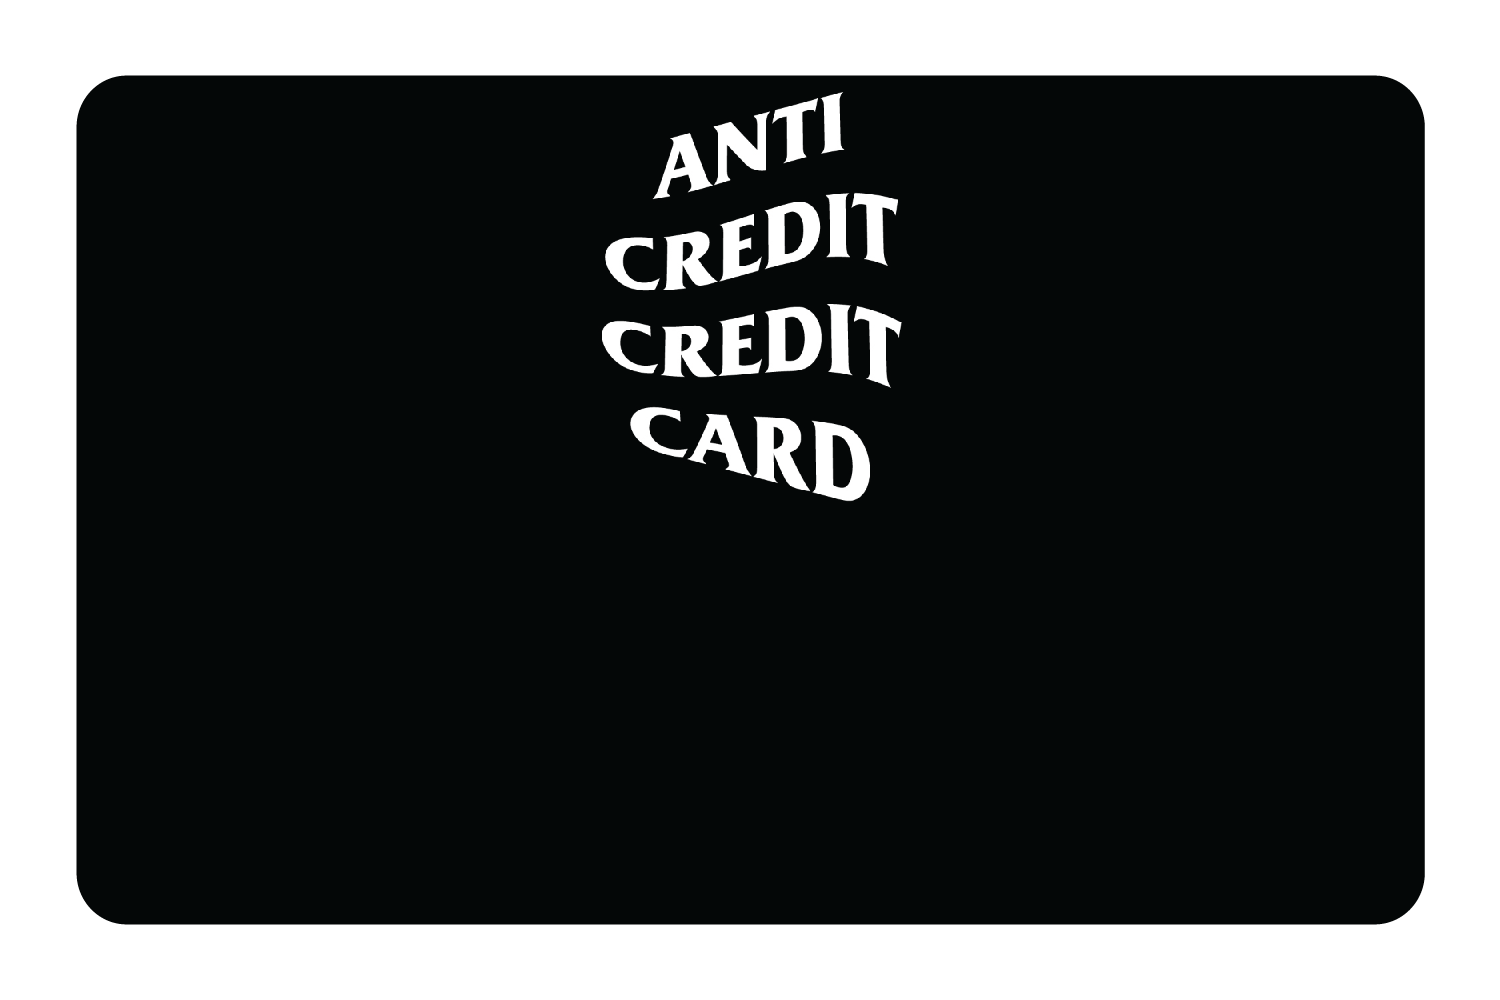 Custom Your Bank Card | Credit Card Skin | Credit Card Sticker